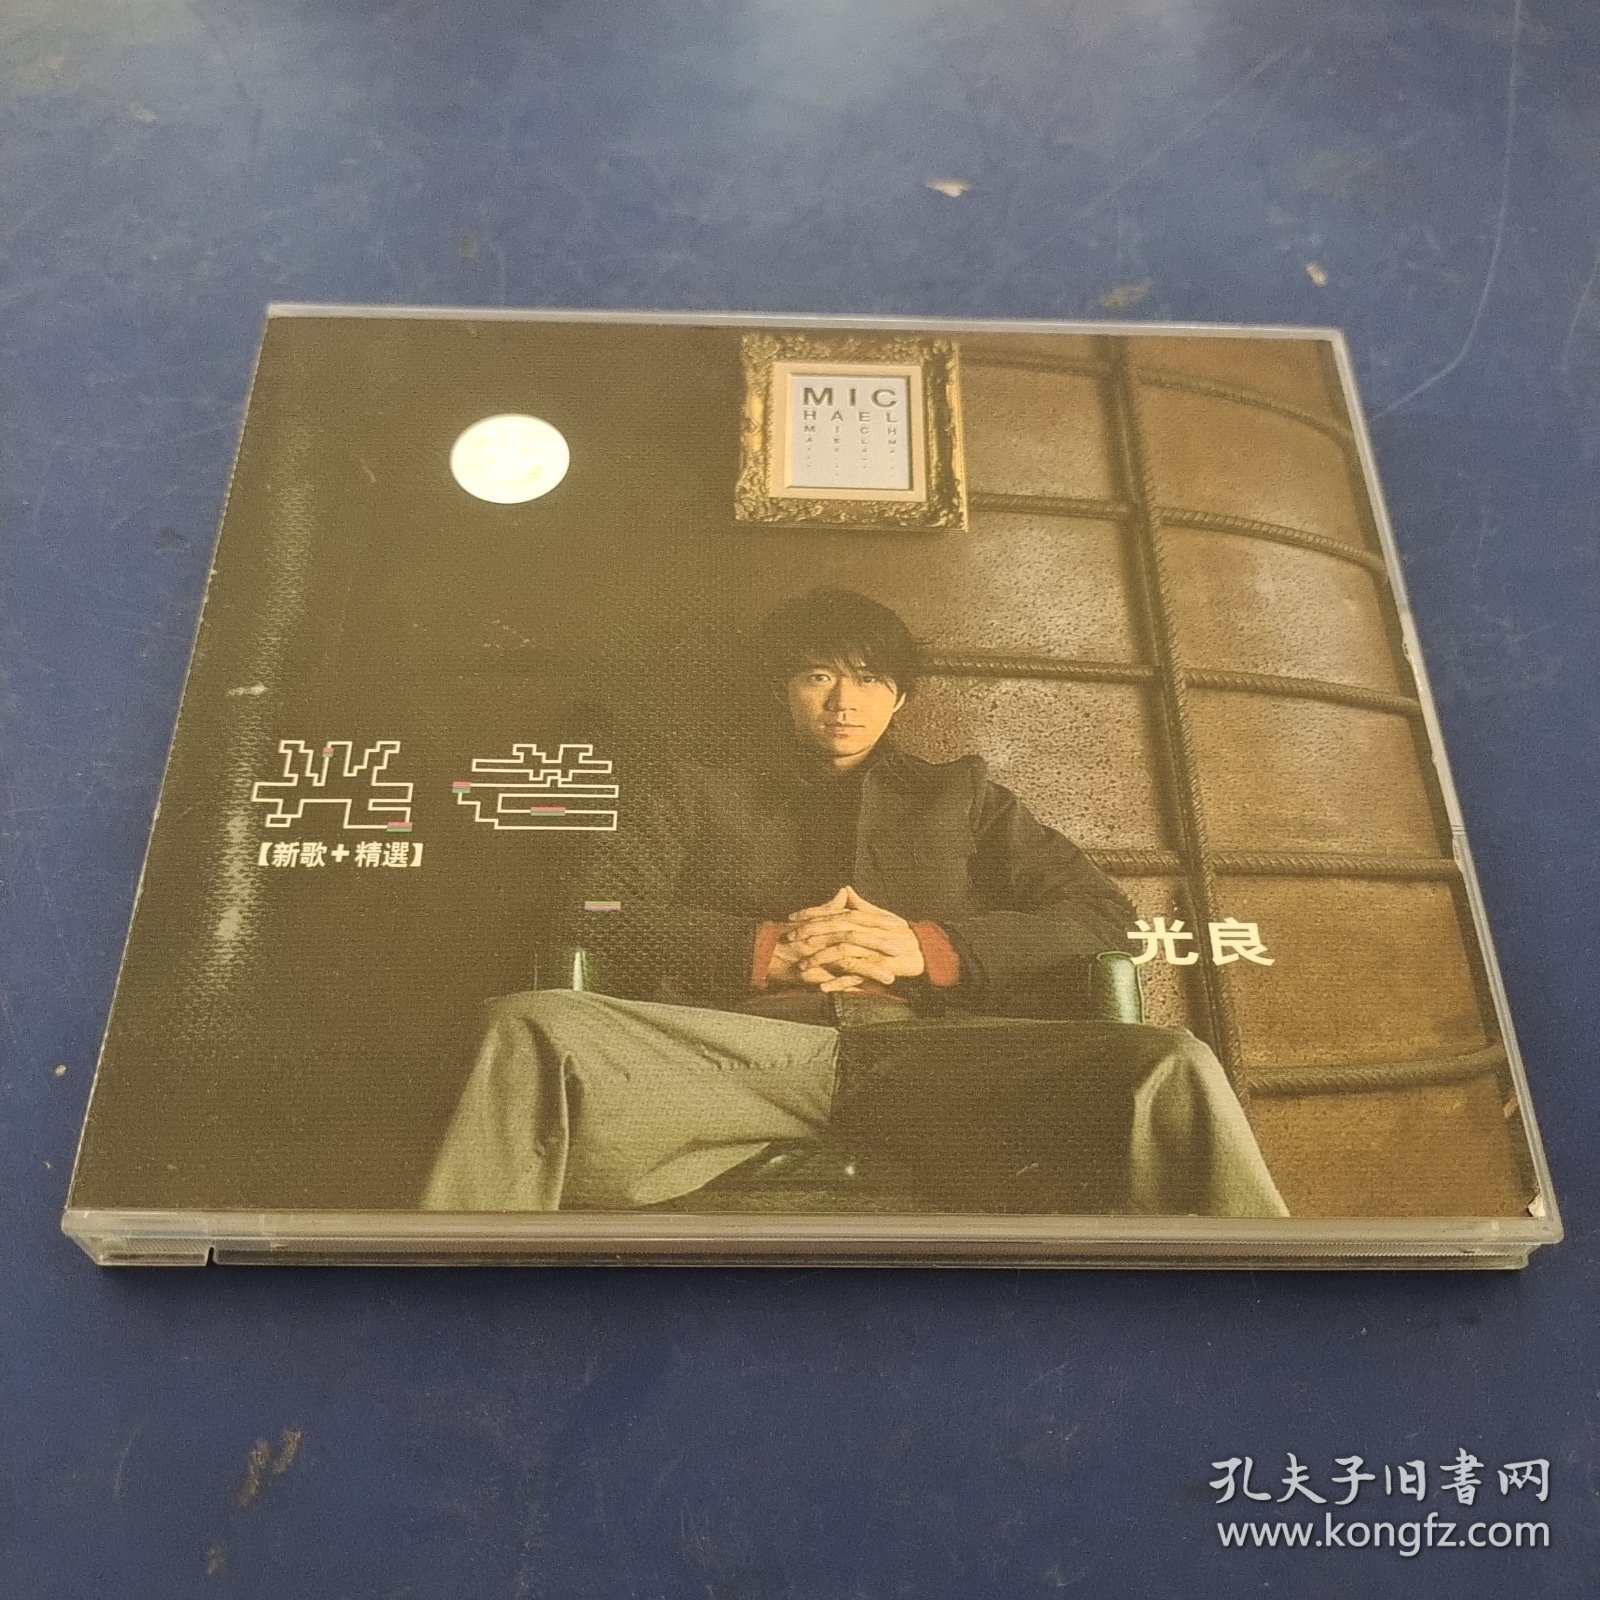 歌曲VCD： 光良光芒【新歌+精选】 2碟装 发货前试播，确保播放正常发货